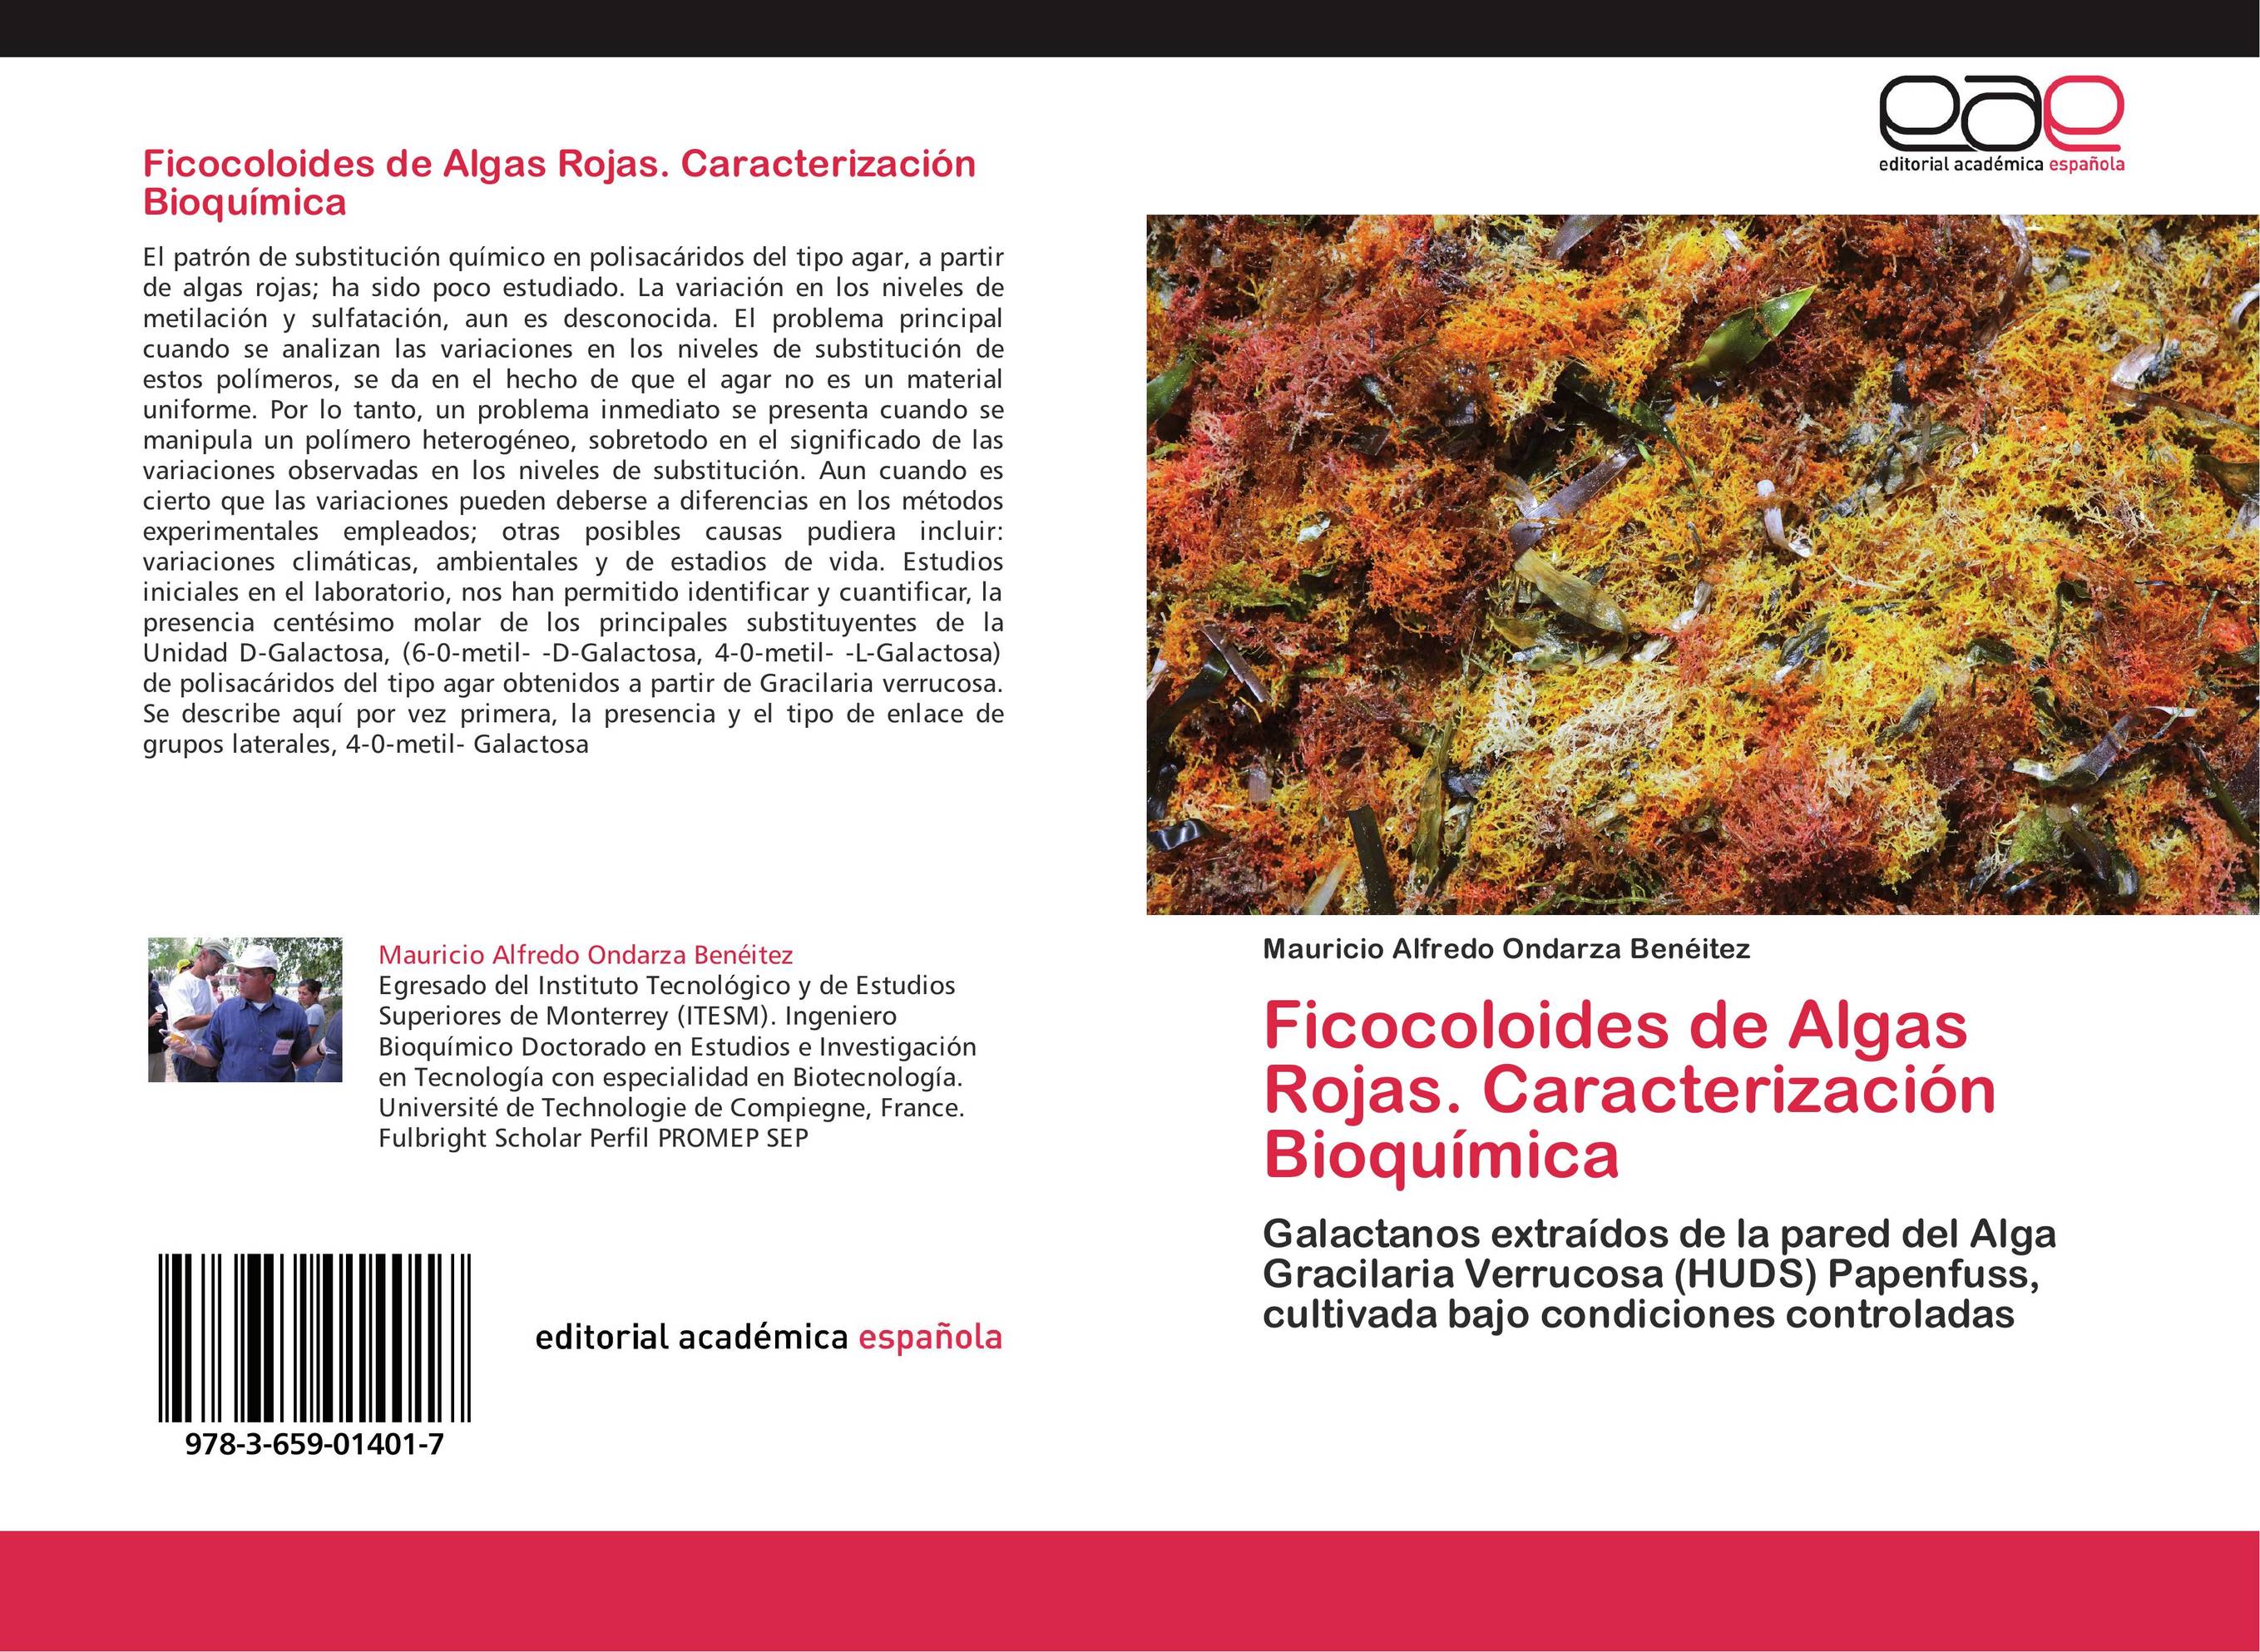 Ficocoloides de Algas Rojas. Caracterización Bioquímica